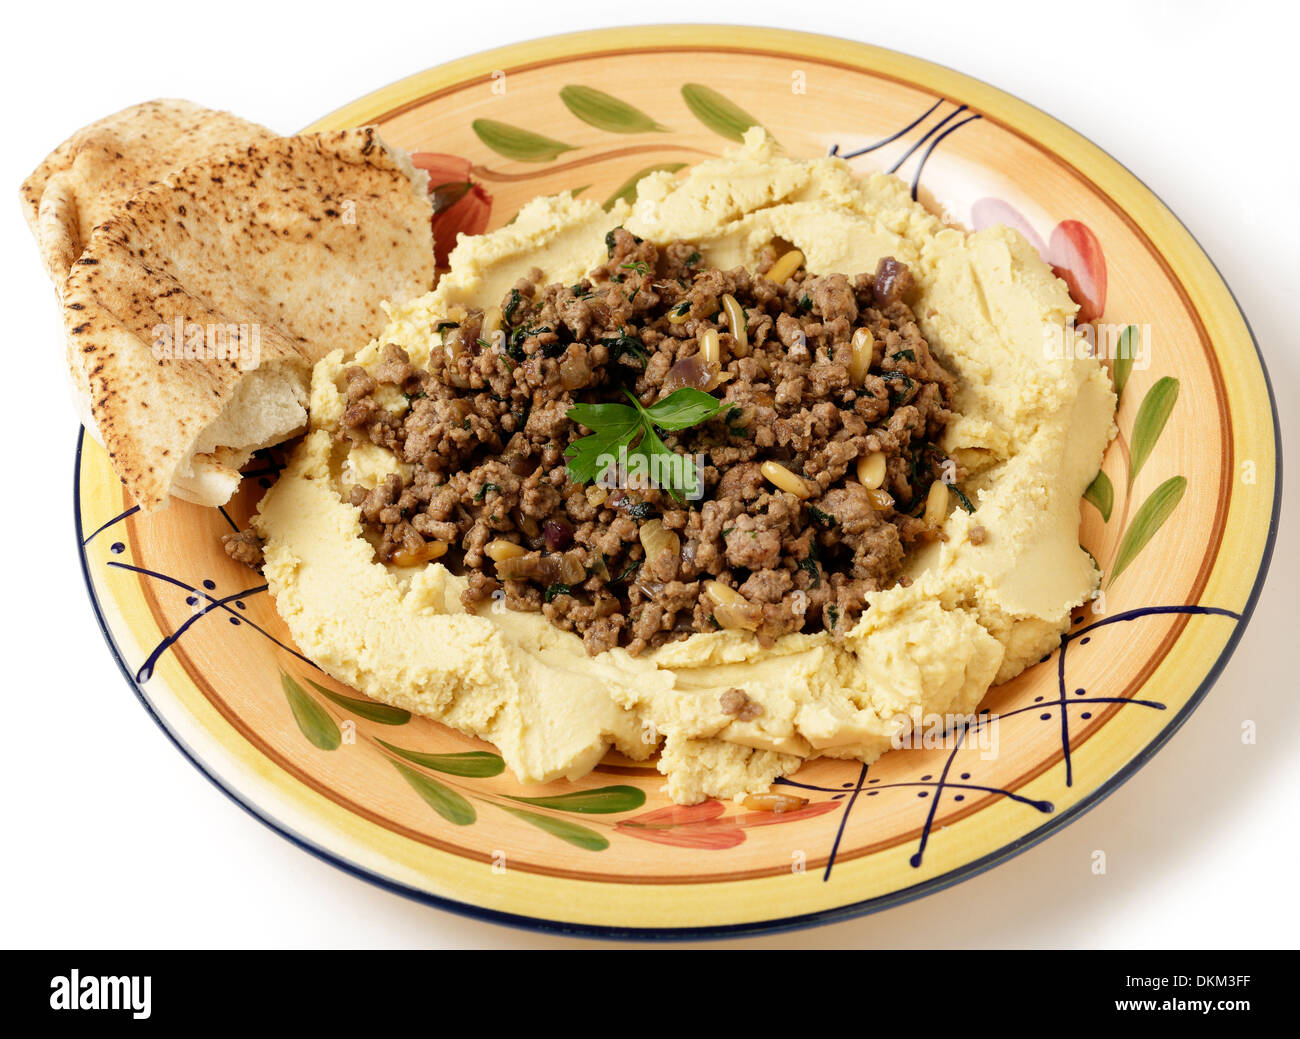 Ein Teller mit Hummus Kichererbsen Dip gefüllt mit gebratenem Lamm Hackfleisch, Zwiebeln, Pinienkernen und Petersilie, bekannt als Hummus Bil Lahme. Stockfoto